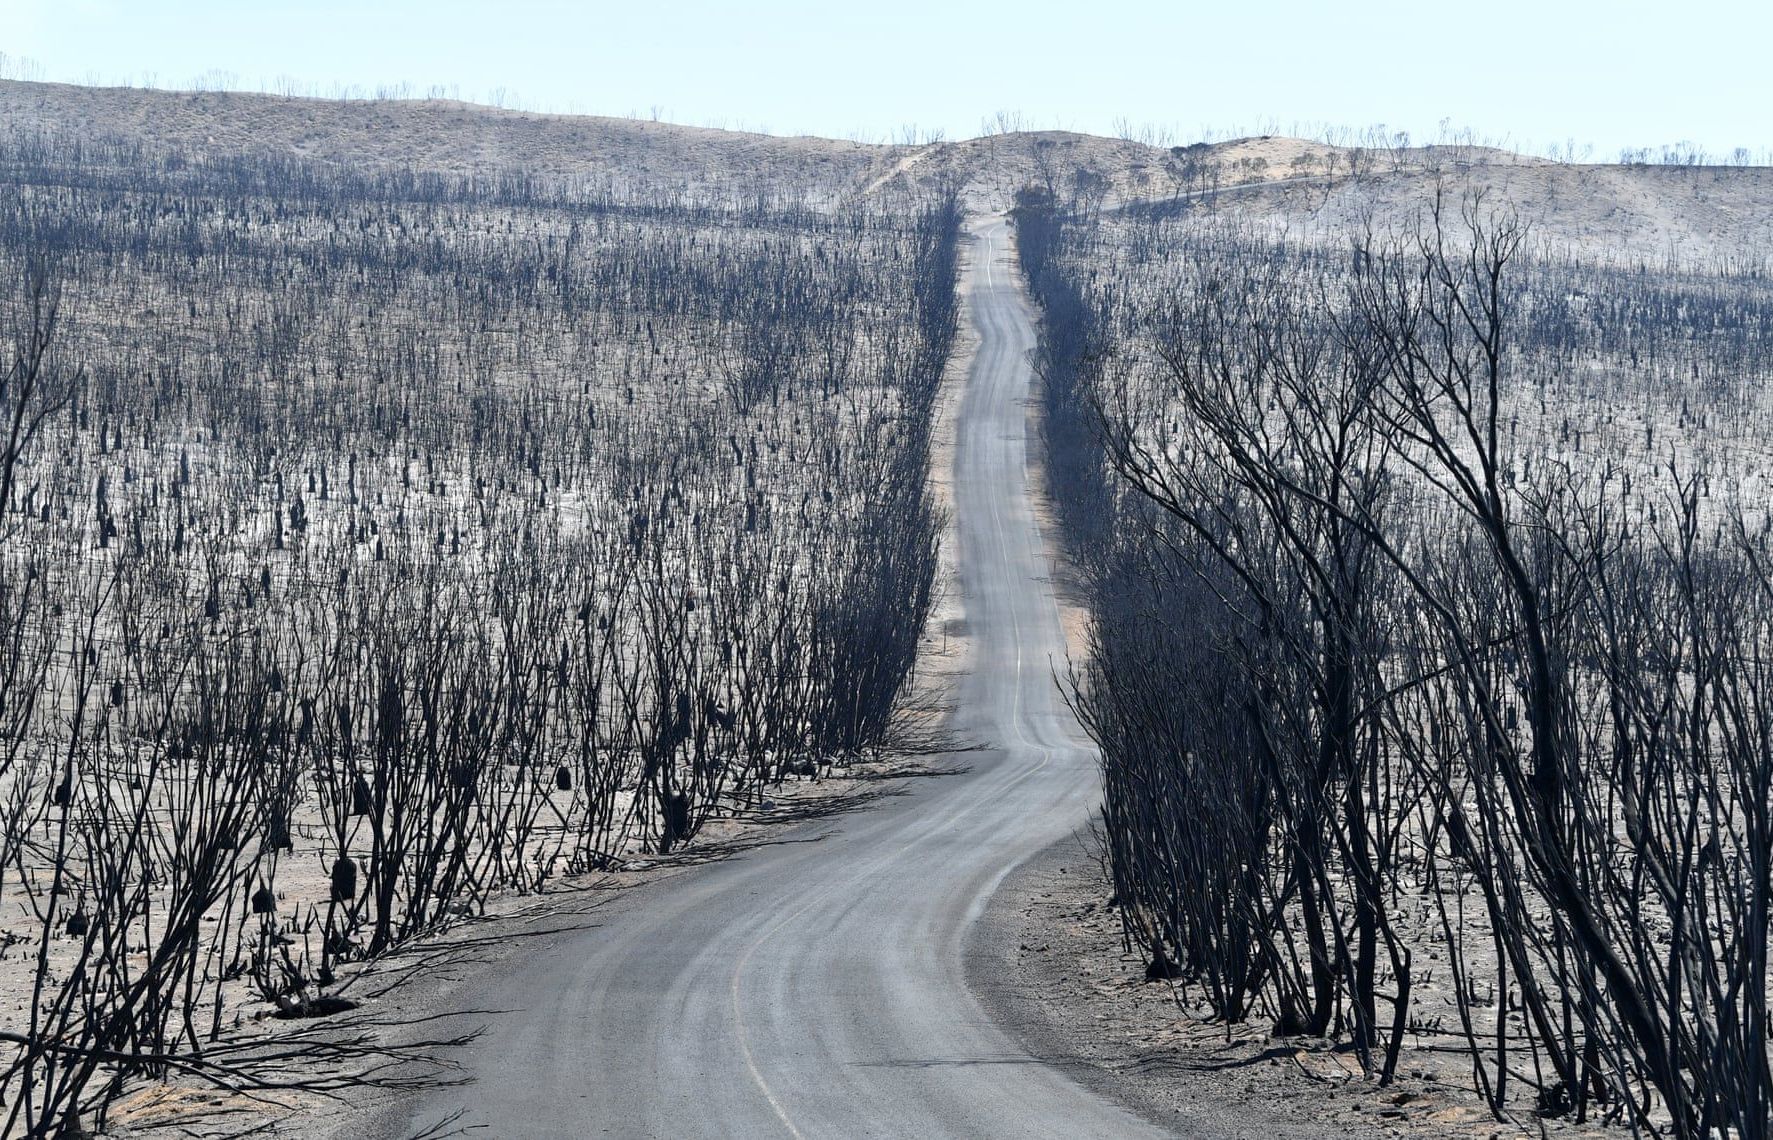 Quang cảnh hoang tàn ở đảo Kangaroo sau thảm họa cháy rừng